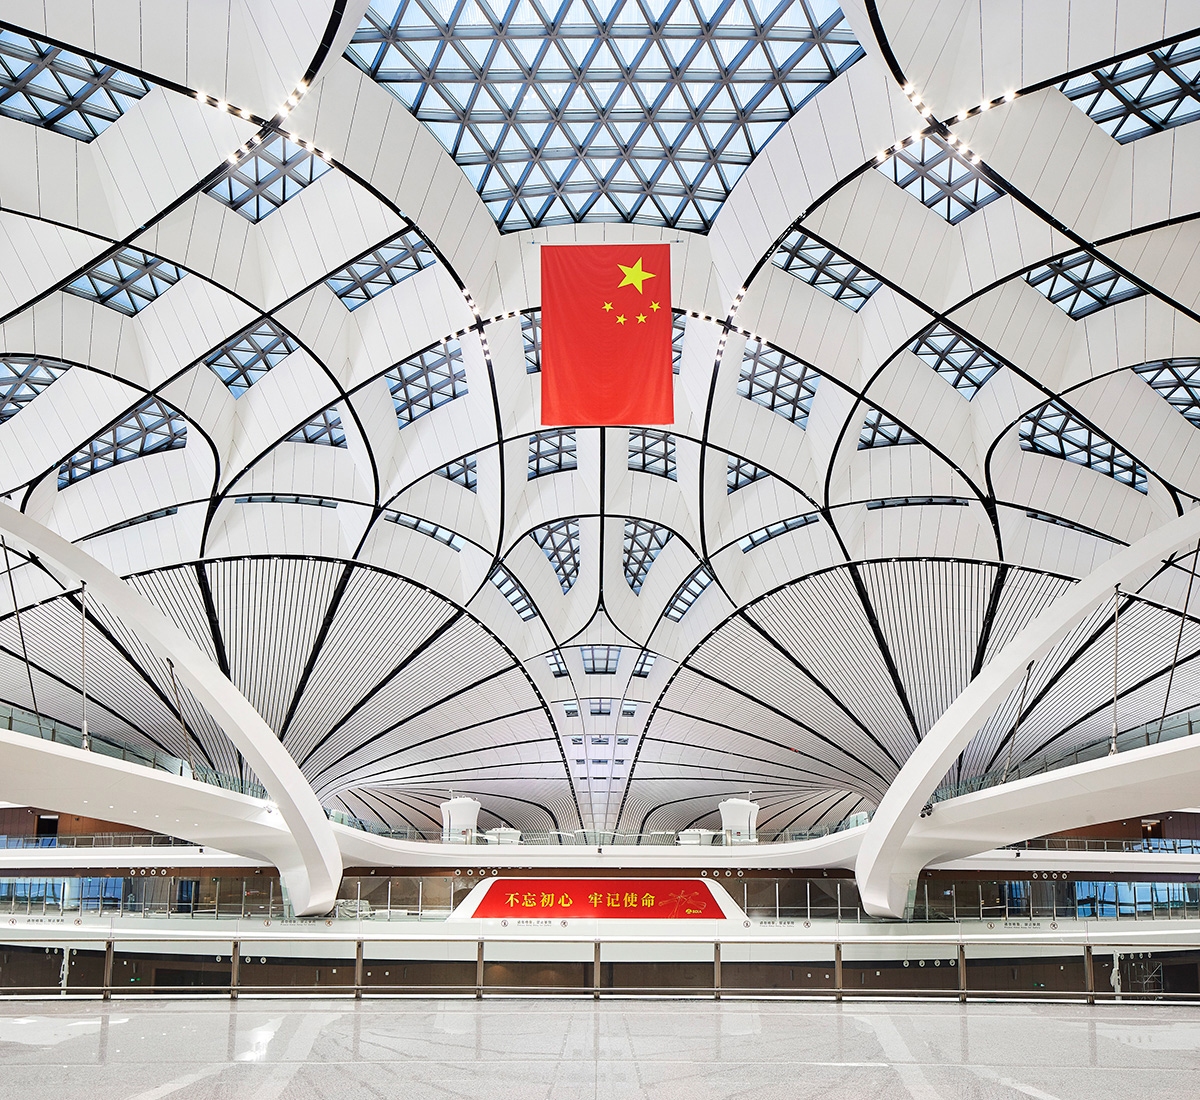 扎哈·哈迪德设计的机场内部-天花板结构